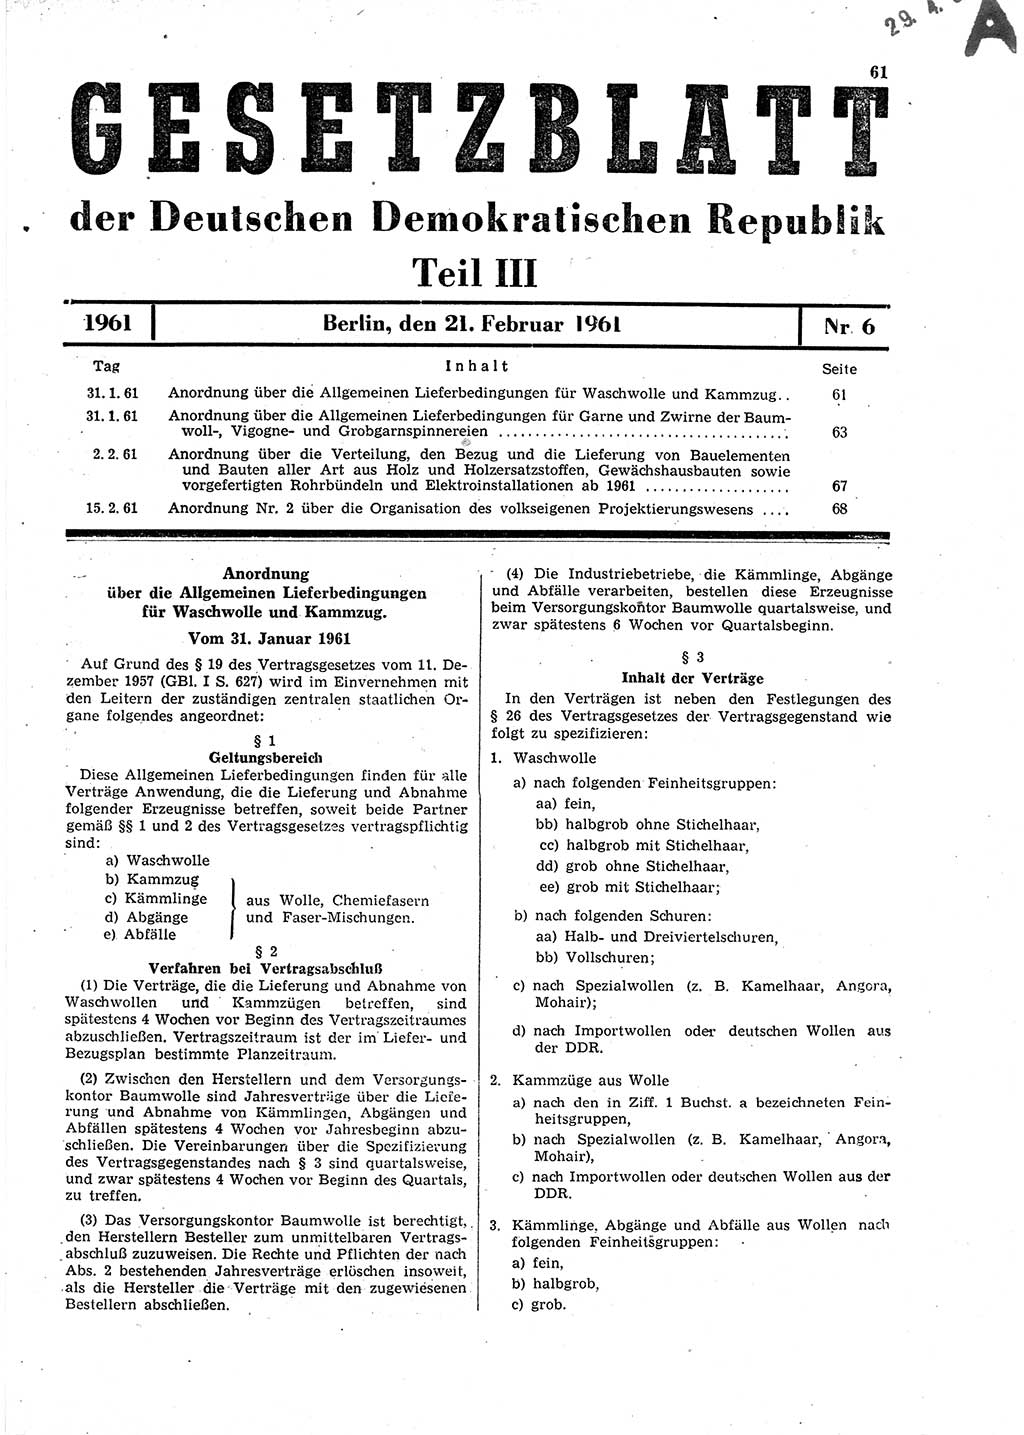 Gesetzblatt (GBl.) der Deutschen Demokratischen Republik (DDR) Teil ⅠⅠⅠ 1961, Seite 61 (GBl. DDR ⅠⅠⅠ 1961, S. 61)